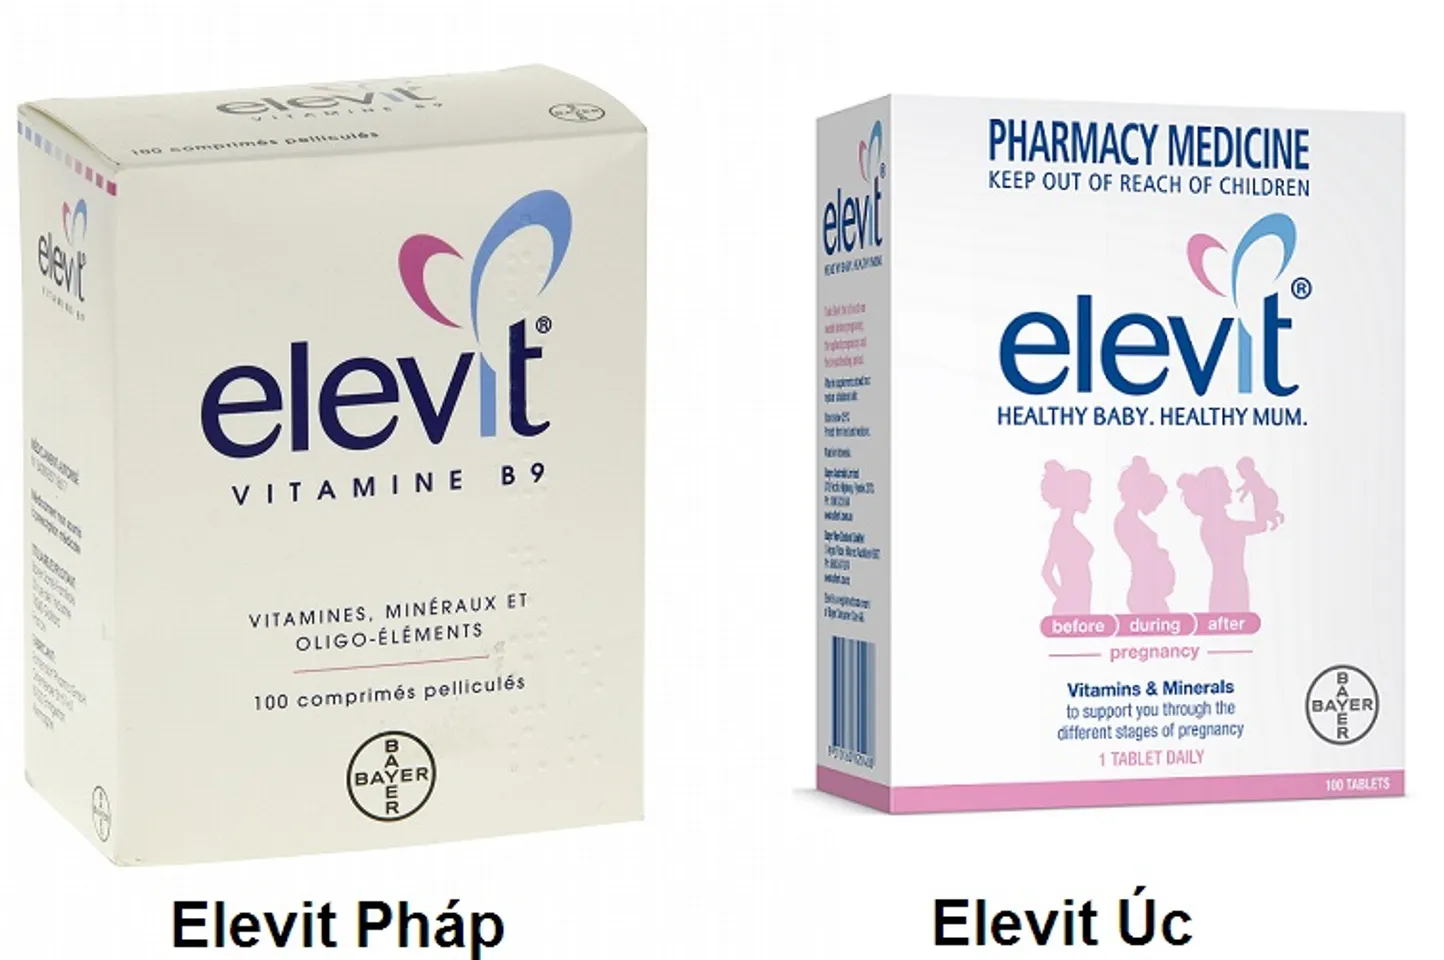 Elevit Pháp và Elevit Úc đều là 2 sản phẩm nổi tiếng của Bayer cho 2 thị trường Pháp và Úc